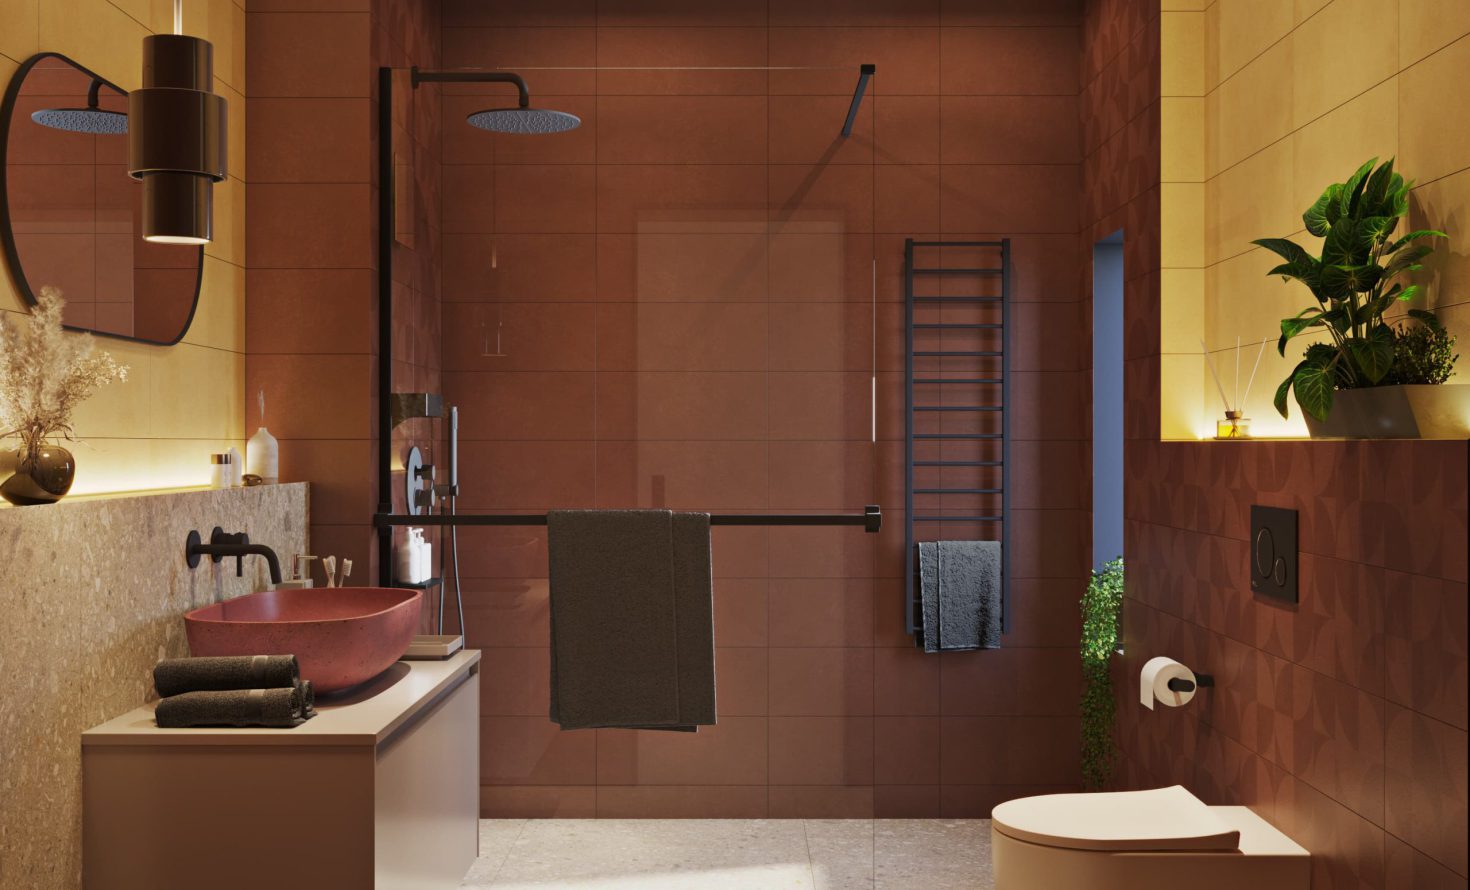 SIKO Farebná kúpeľňa, terrazzo, zemité farby, tehlová, žltá, farebné umývadlo, závesné WC, walk in sprchovací kút, čierna batéria v kúpeľni